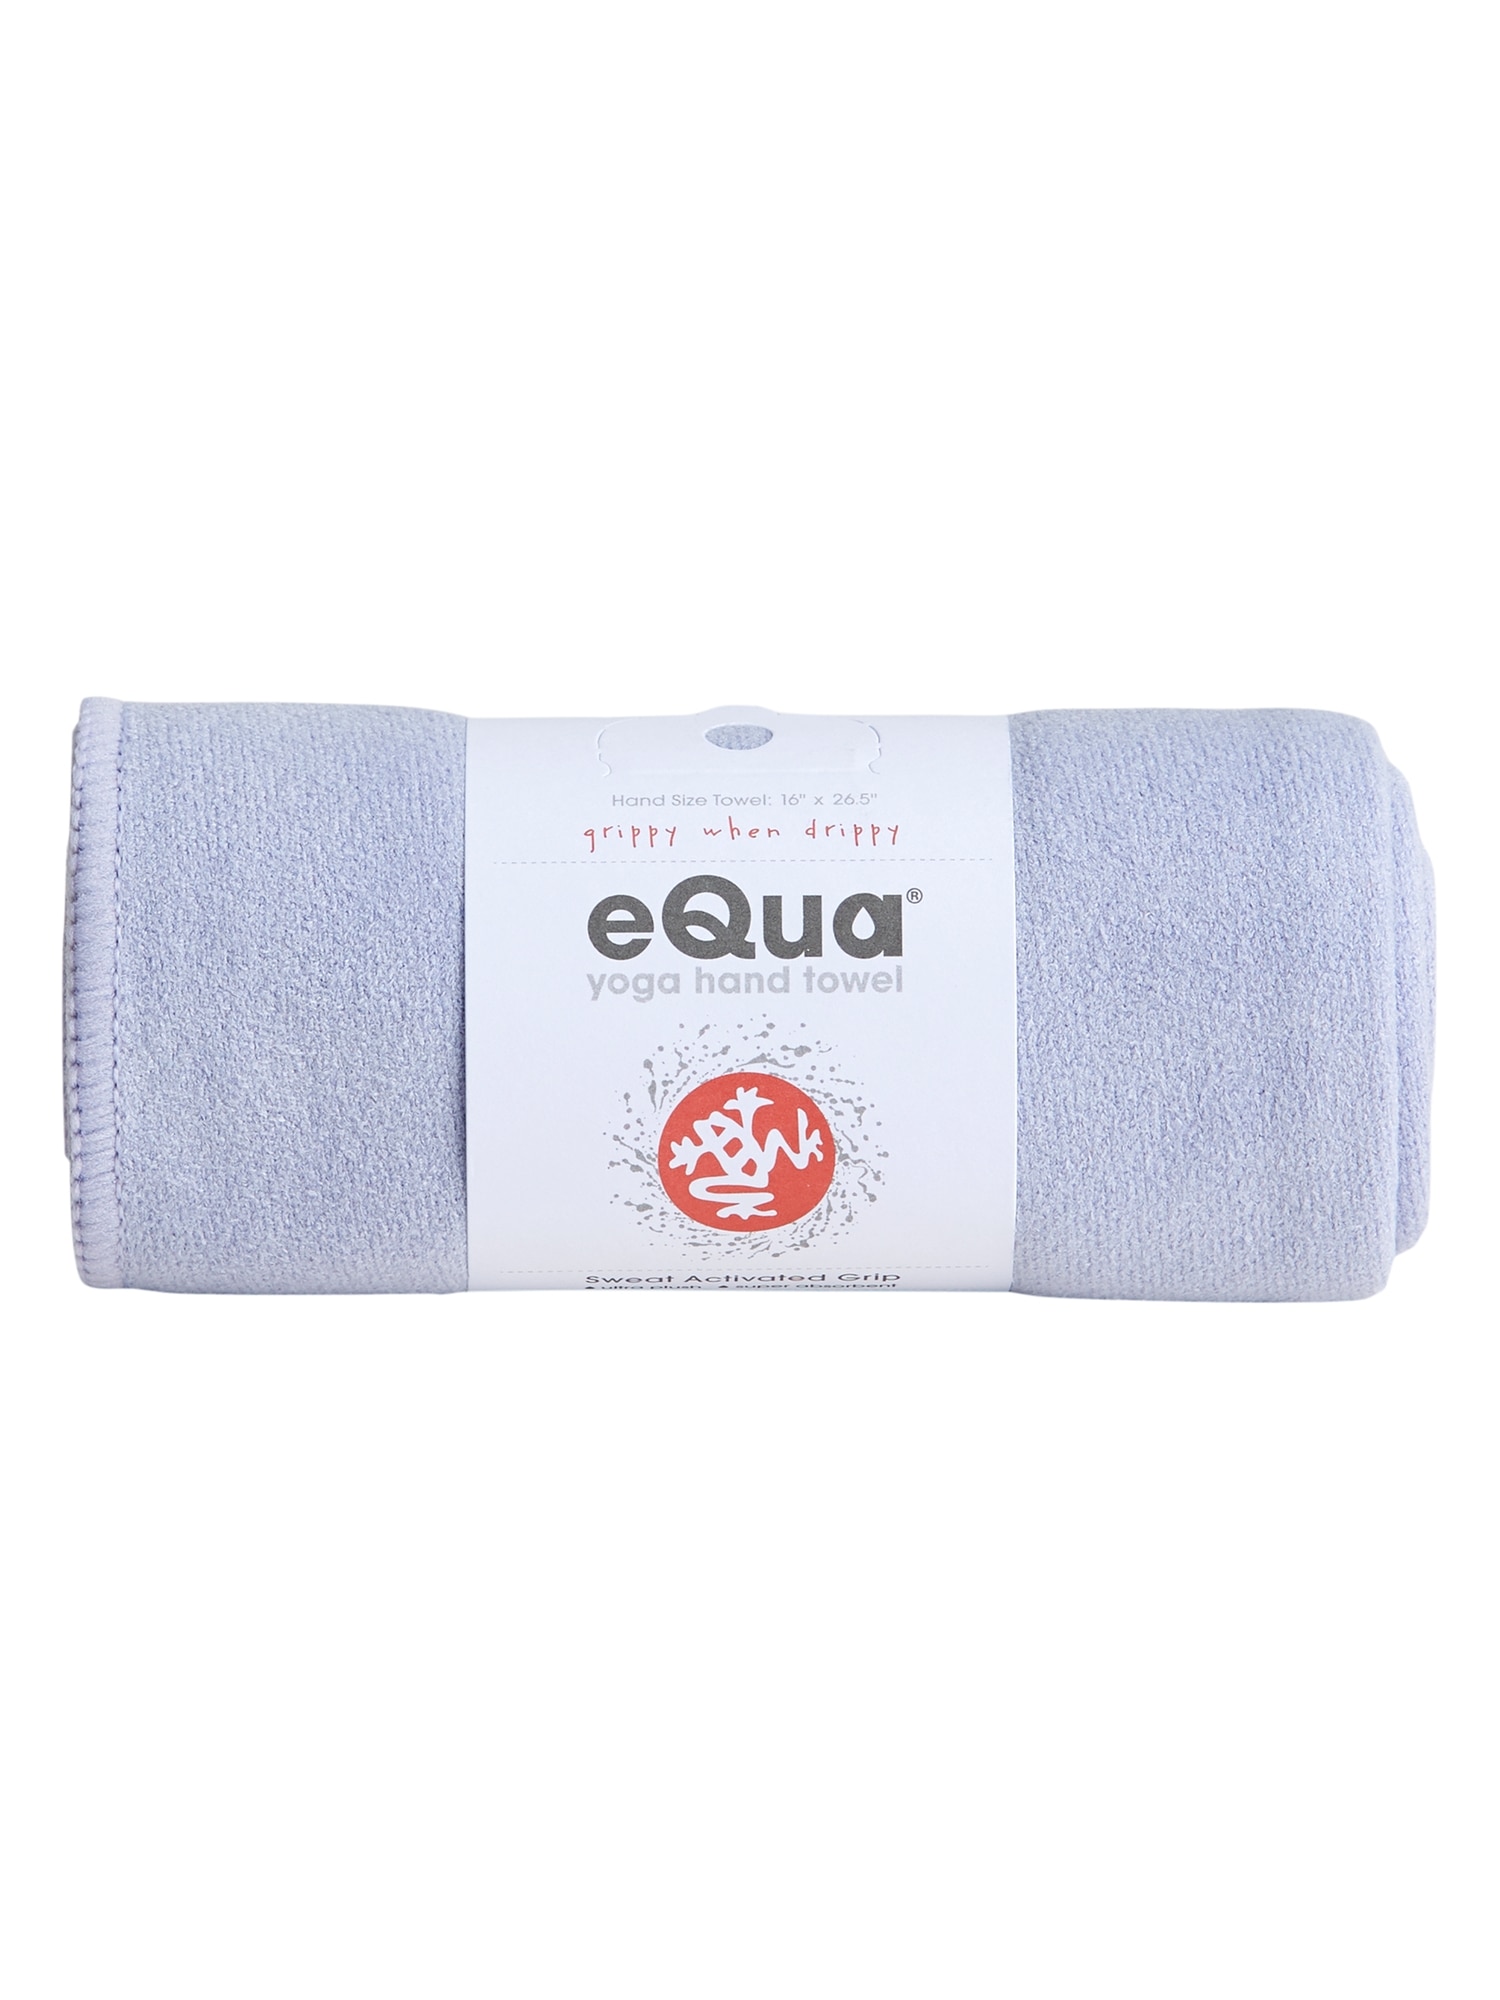 Manduka yoga towels